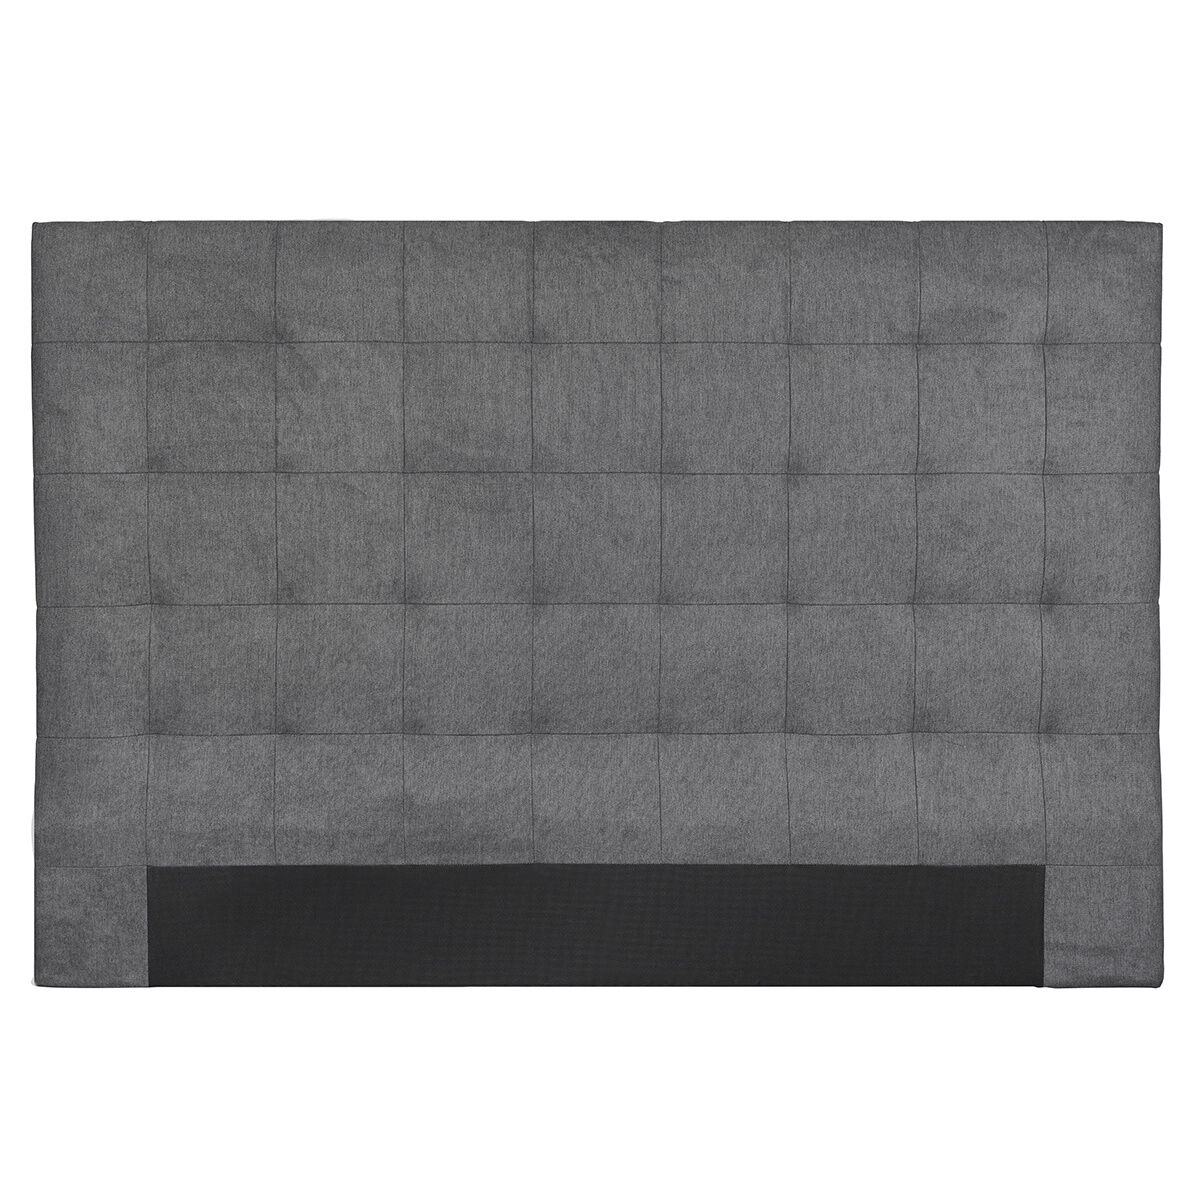 Miliboo Cabecero de cama en tela acolchada gris antracita 180 cm HALCIONA